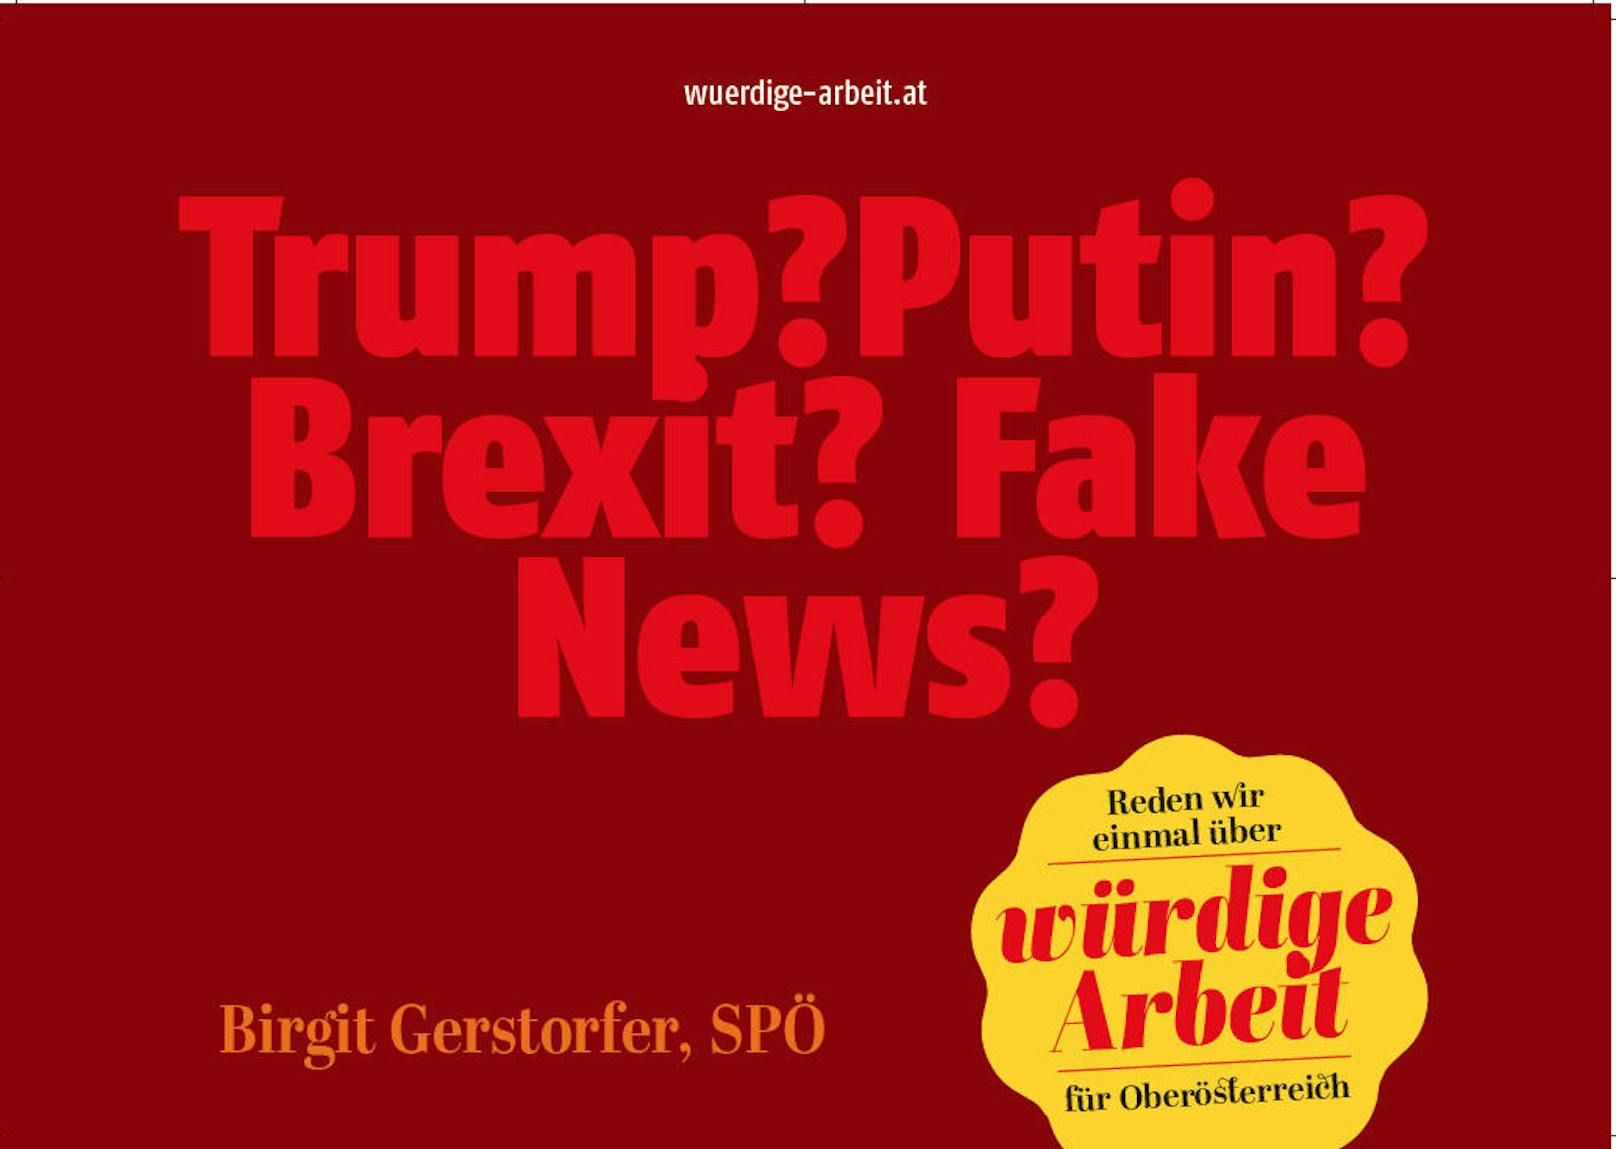 Trump, Putin, Brexit und Fake News mit Fragezeichen? Was will uns die SPÖ wohl damit sagen ...?